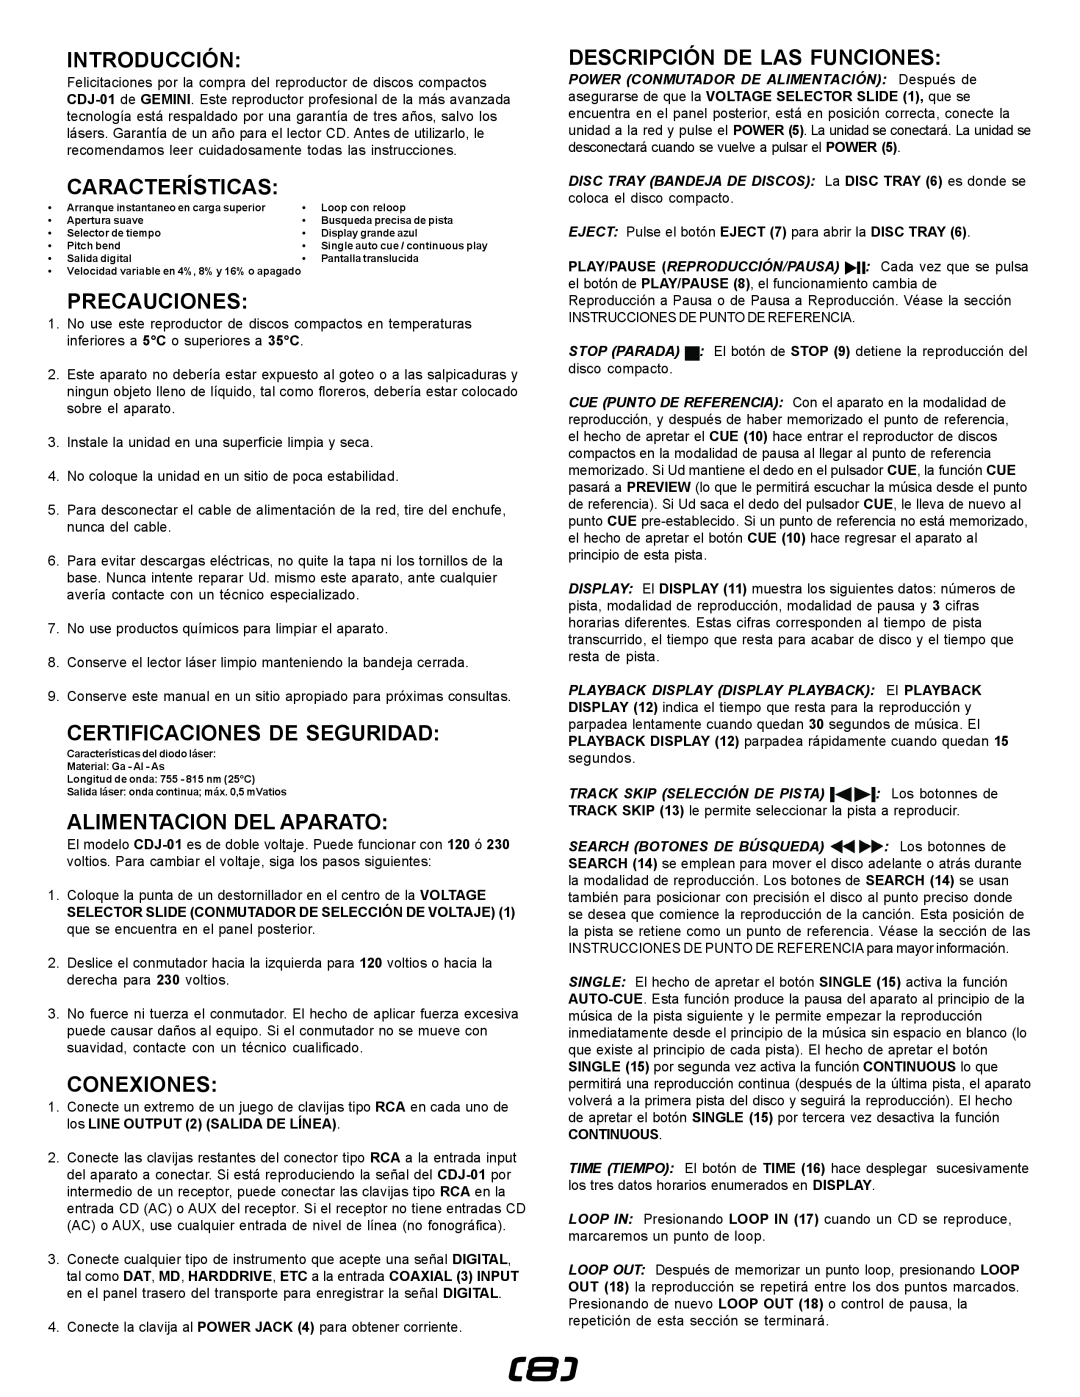 Gemini CDJ-01 manual Introducción, Características, Precauciones, Certificaciones De Seguridad, Alimentacion Del Aparato 